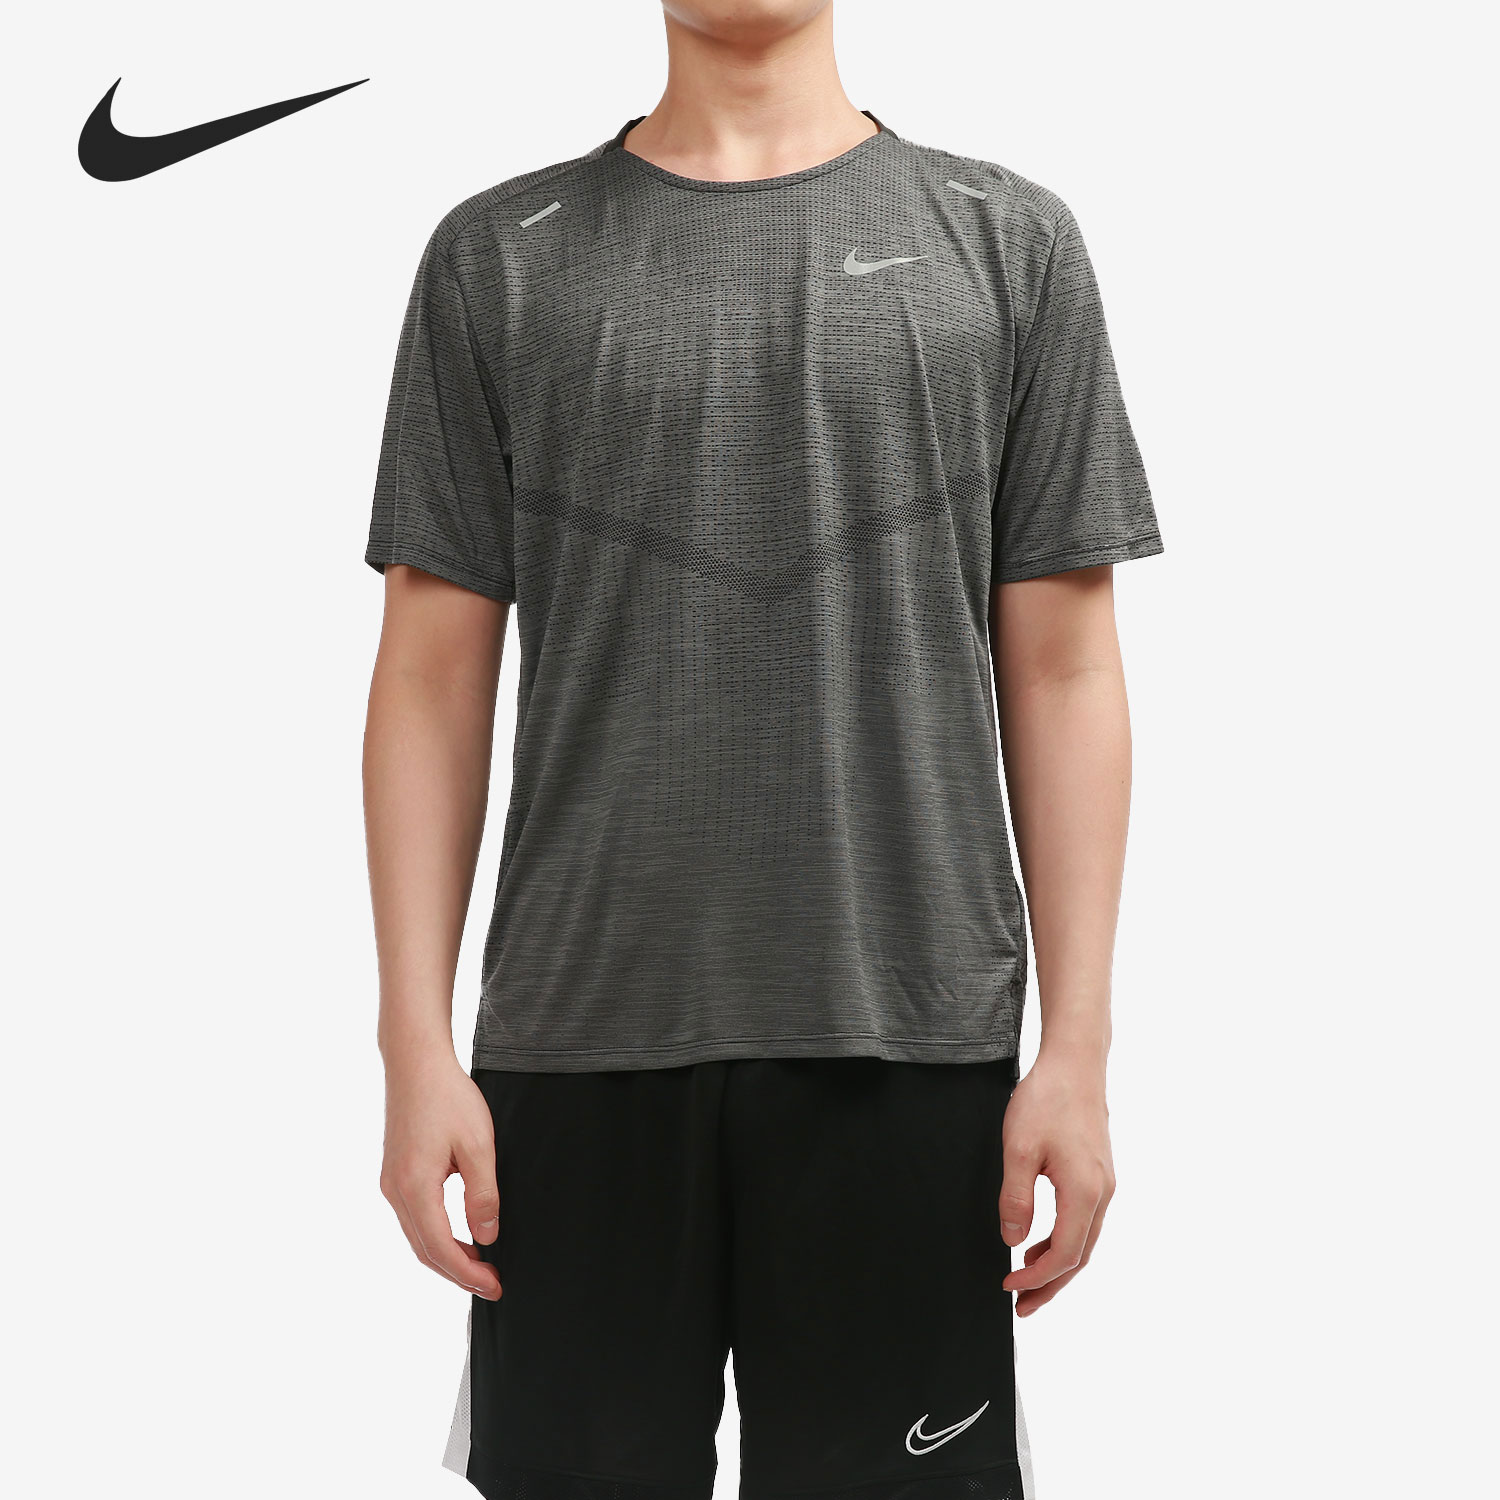 Nike/耐克官方正品夏季新款男子透气休闲短袖运动T恤 CZ9047-010